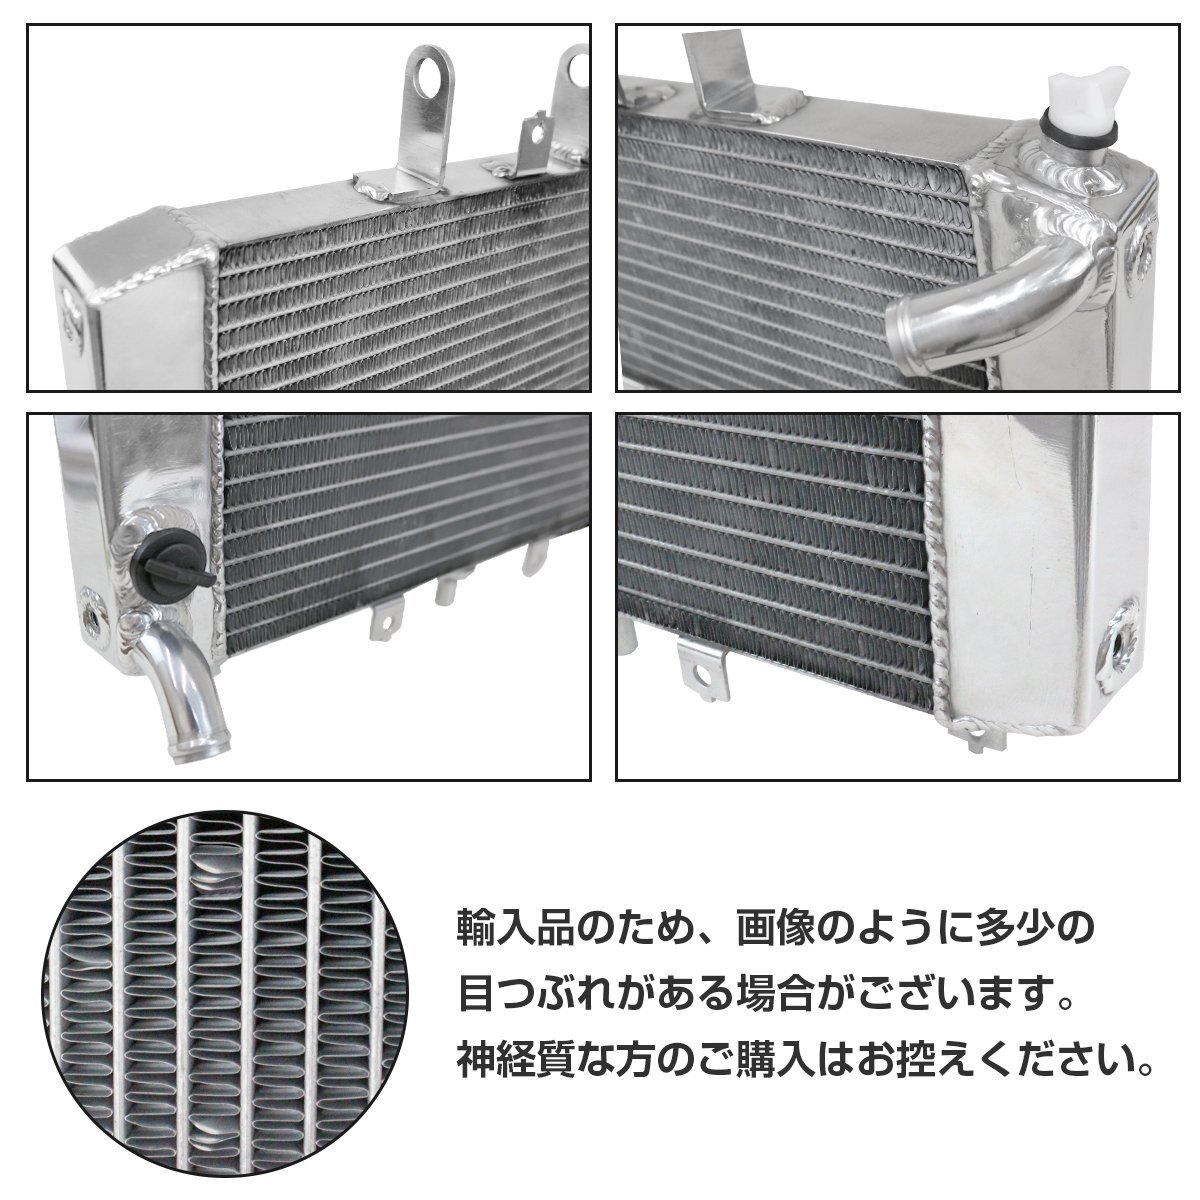 【送料無料】アルミ製 ラジエーター ZRX400 後期 カワサキ アルミ ラジエター 交換 補修 冷却の画像2